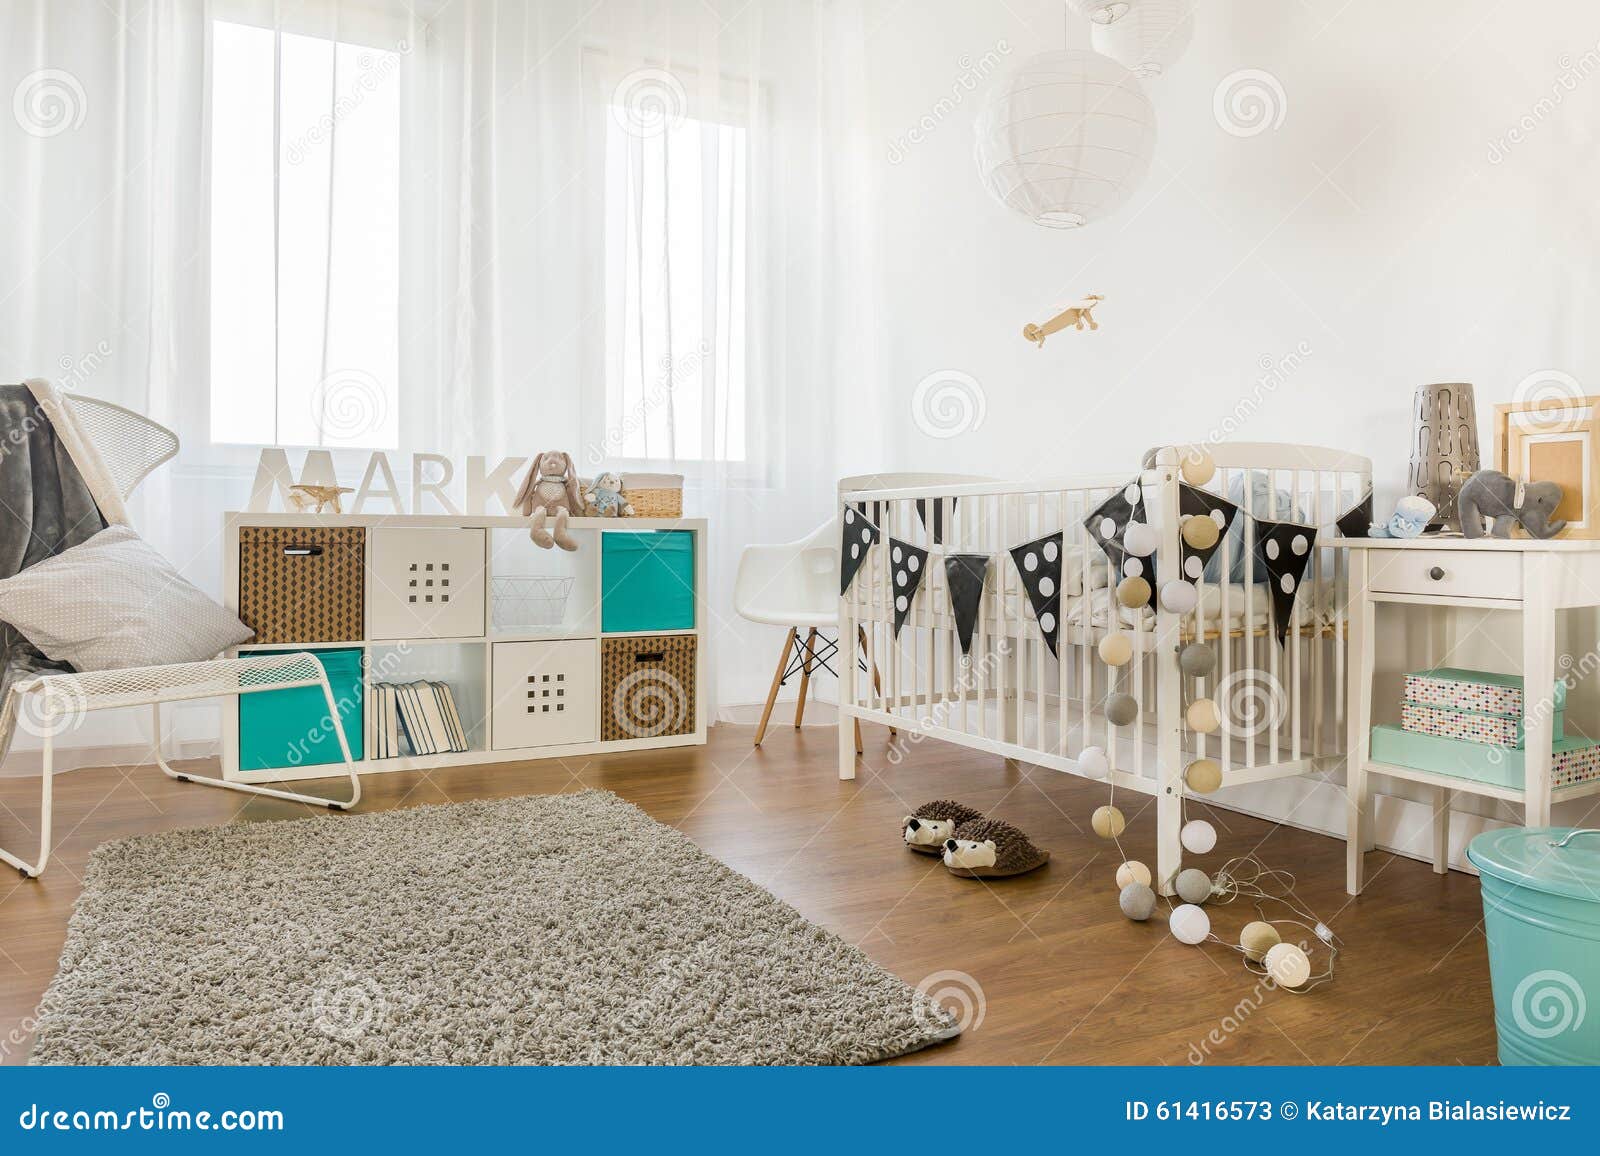 infant bedroom furniture wholesale